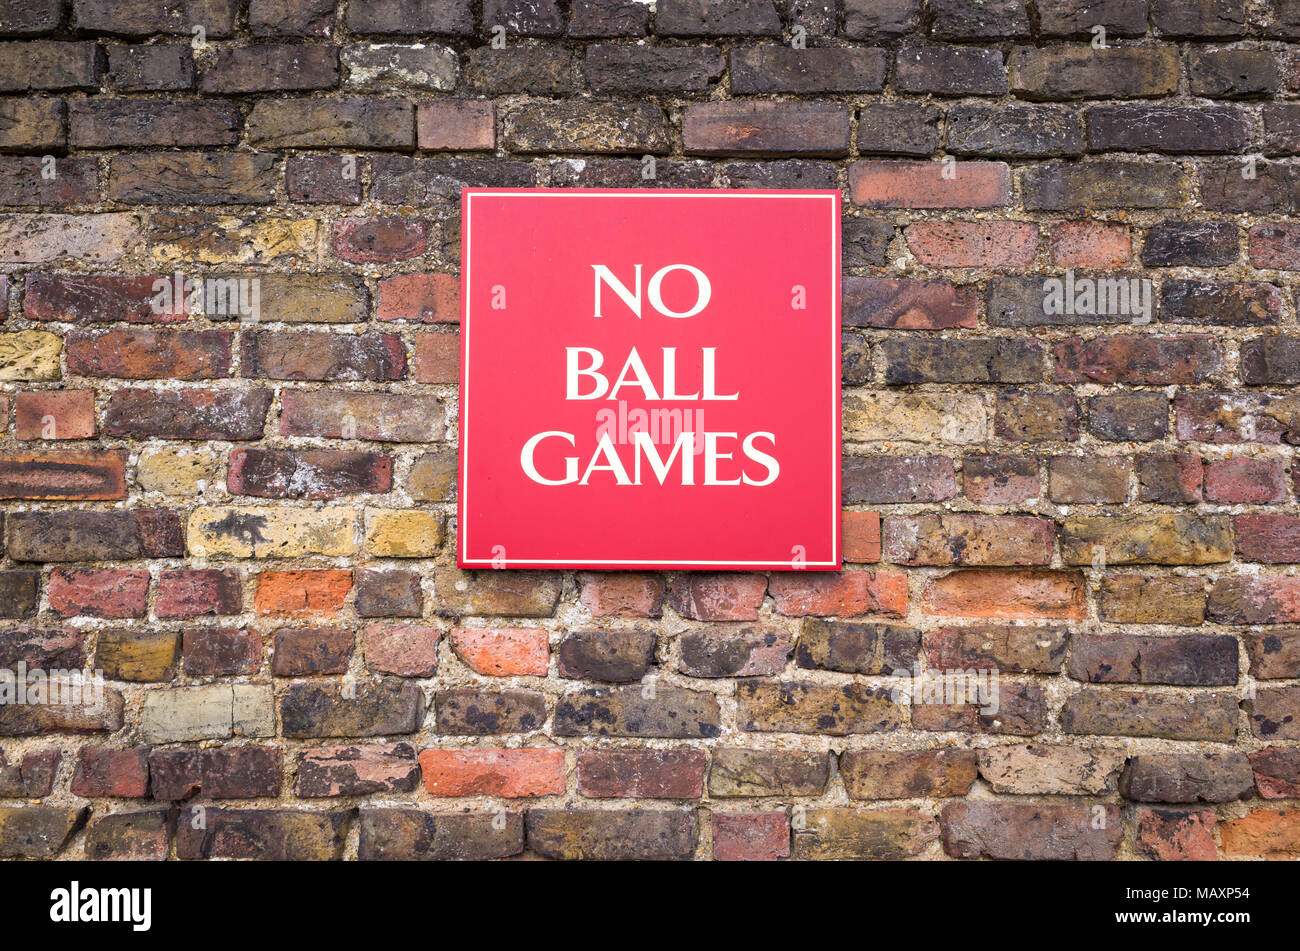 No ball games sign on brick wall, UK Stock Photo